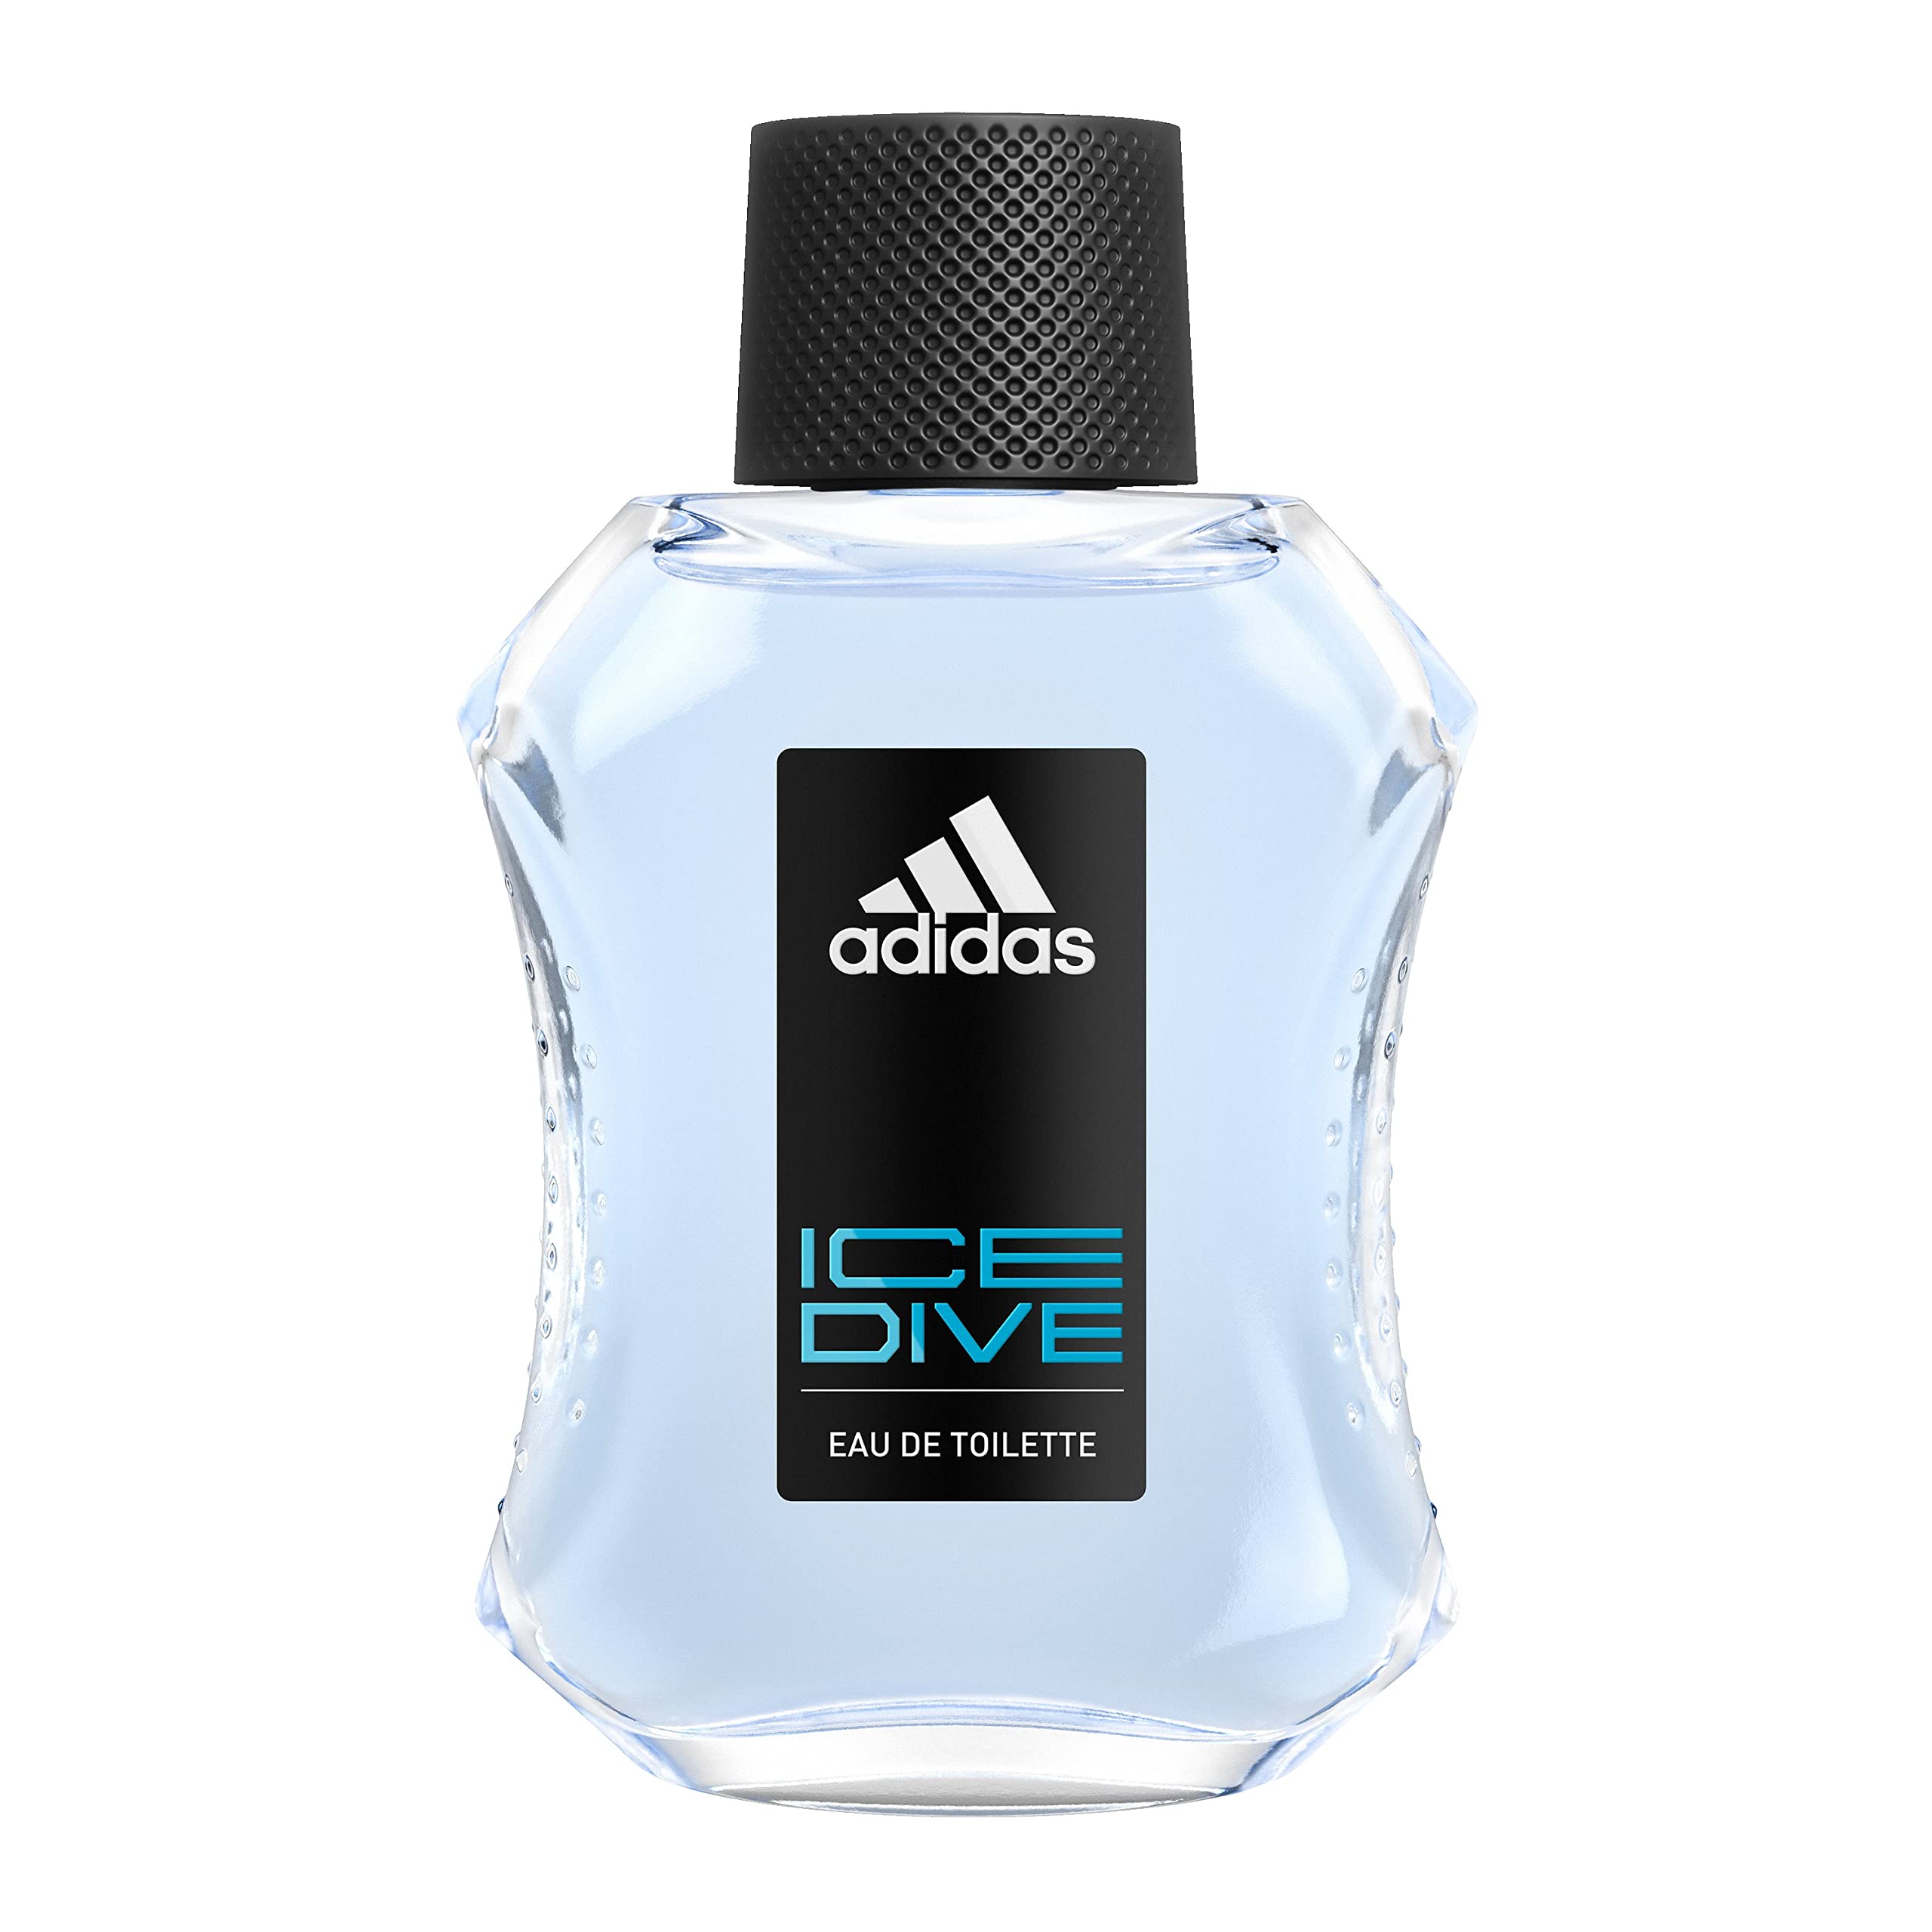 adidas Ice Dive Eau De Toilette Spray for Men, 3.4 fl oz